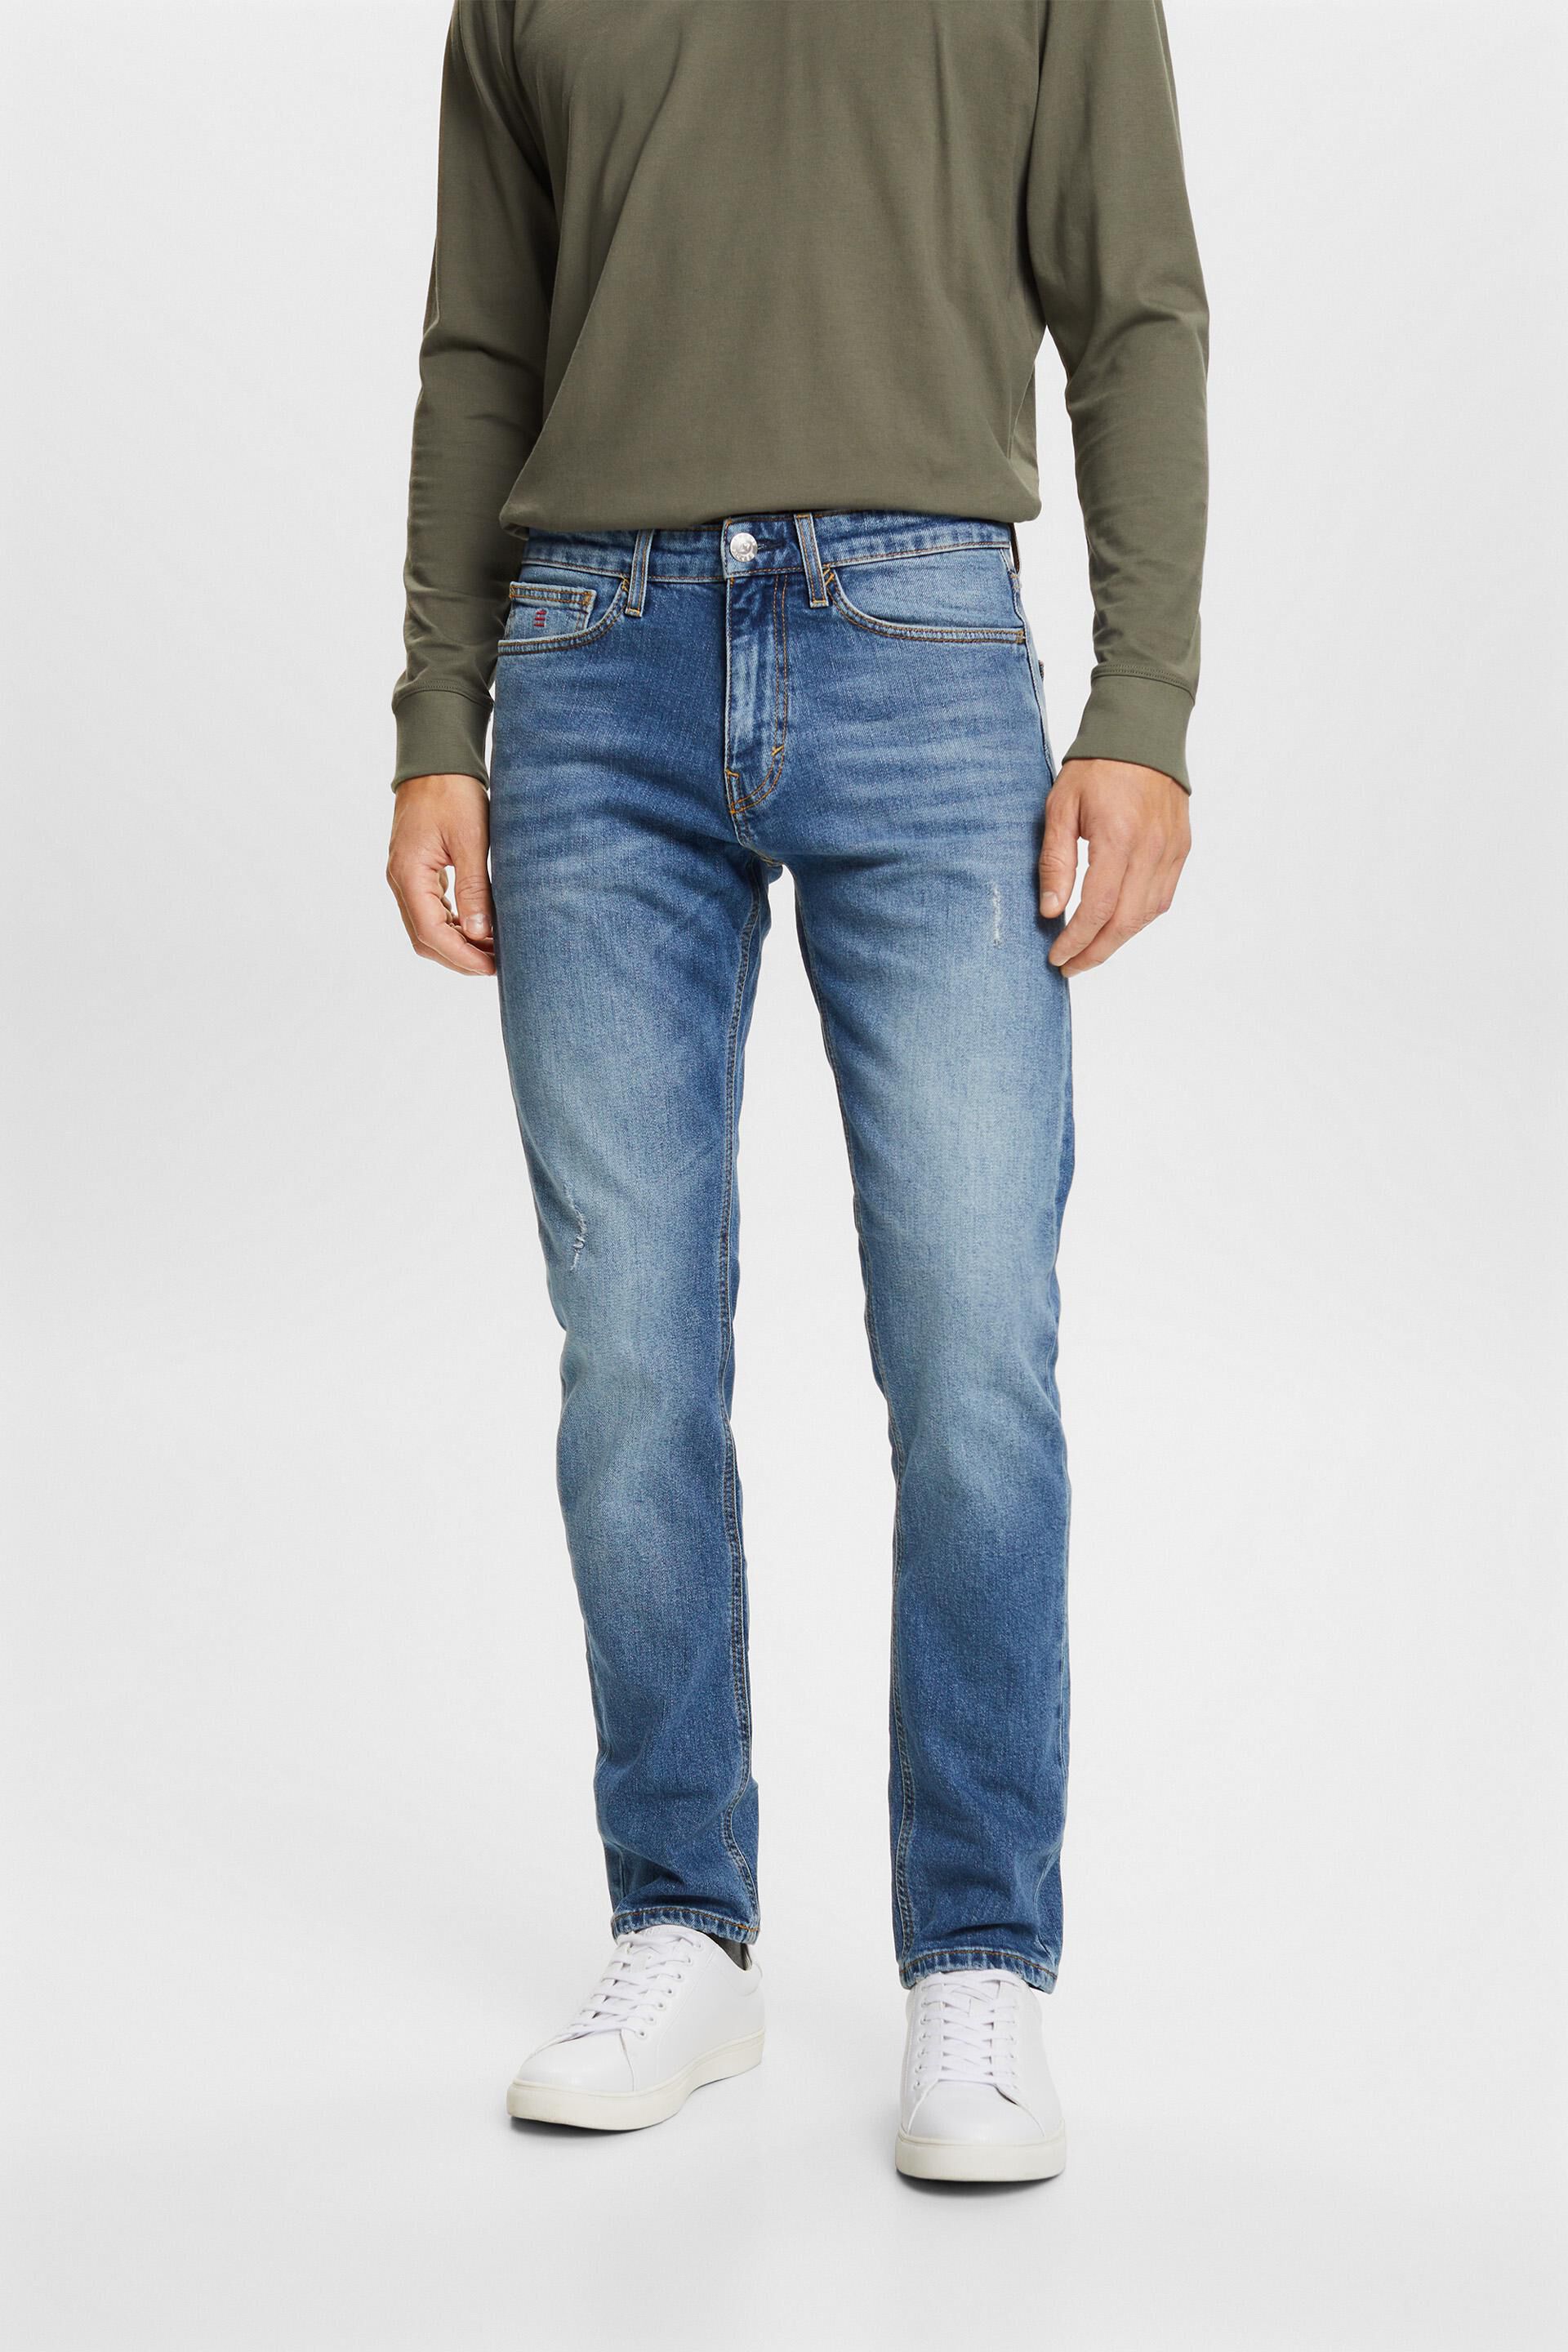 Esprit slim Premium fit jeans stretch